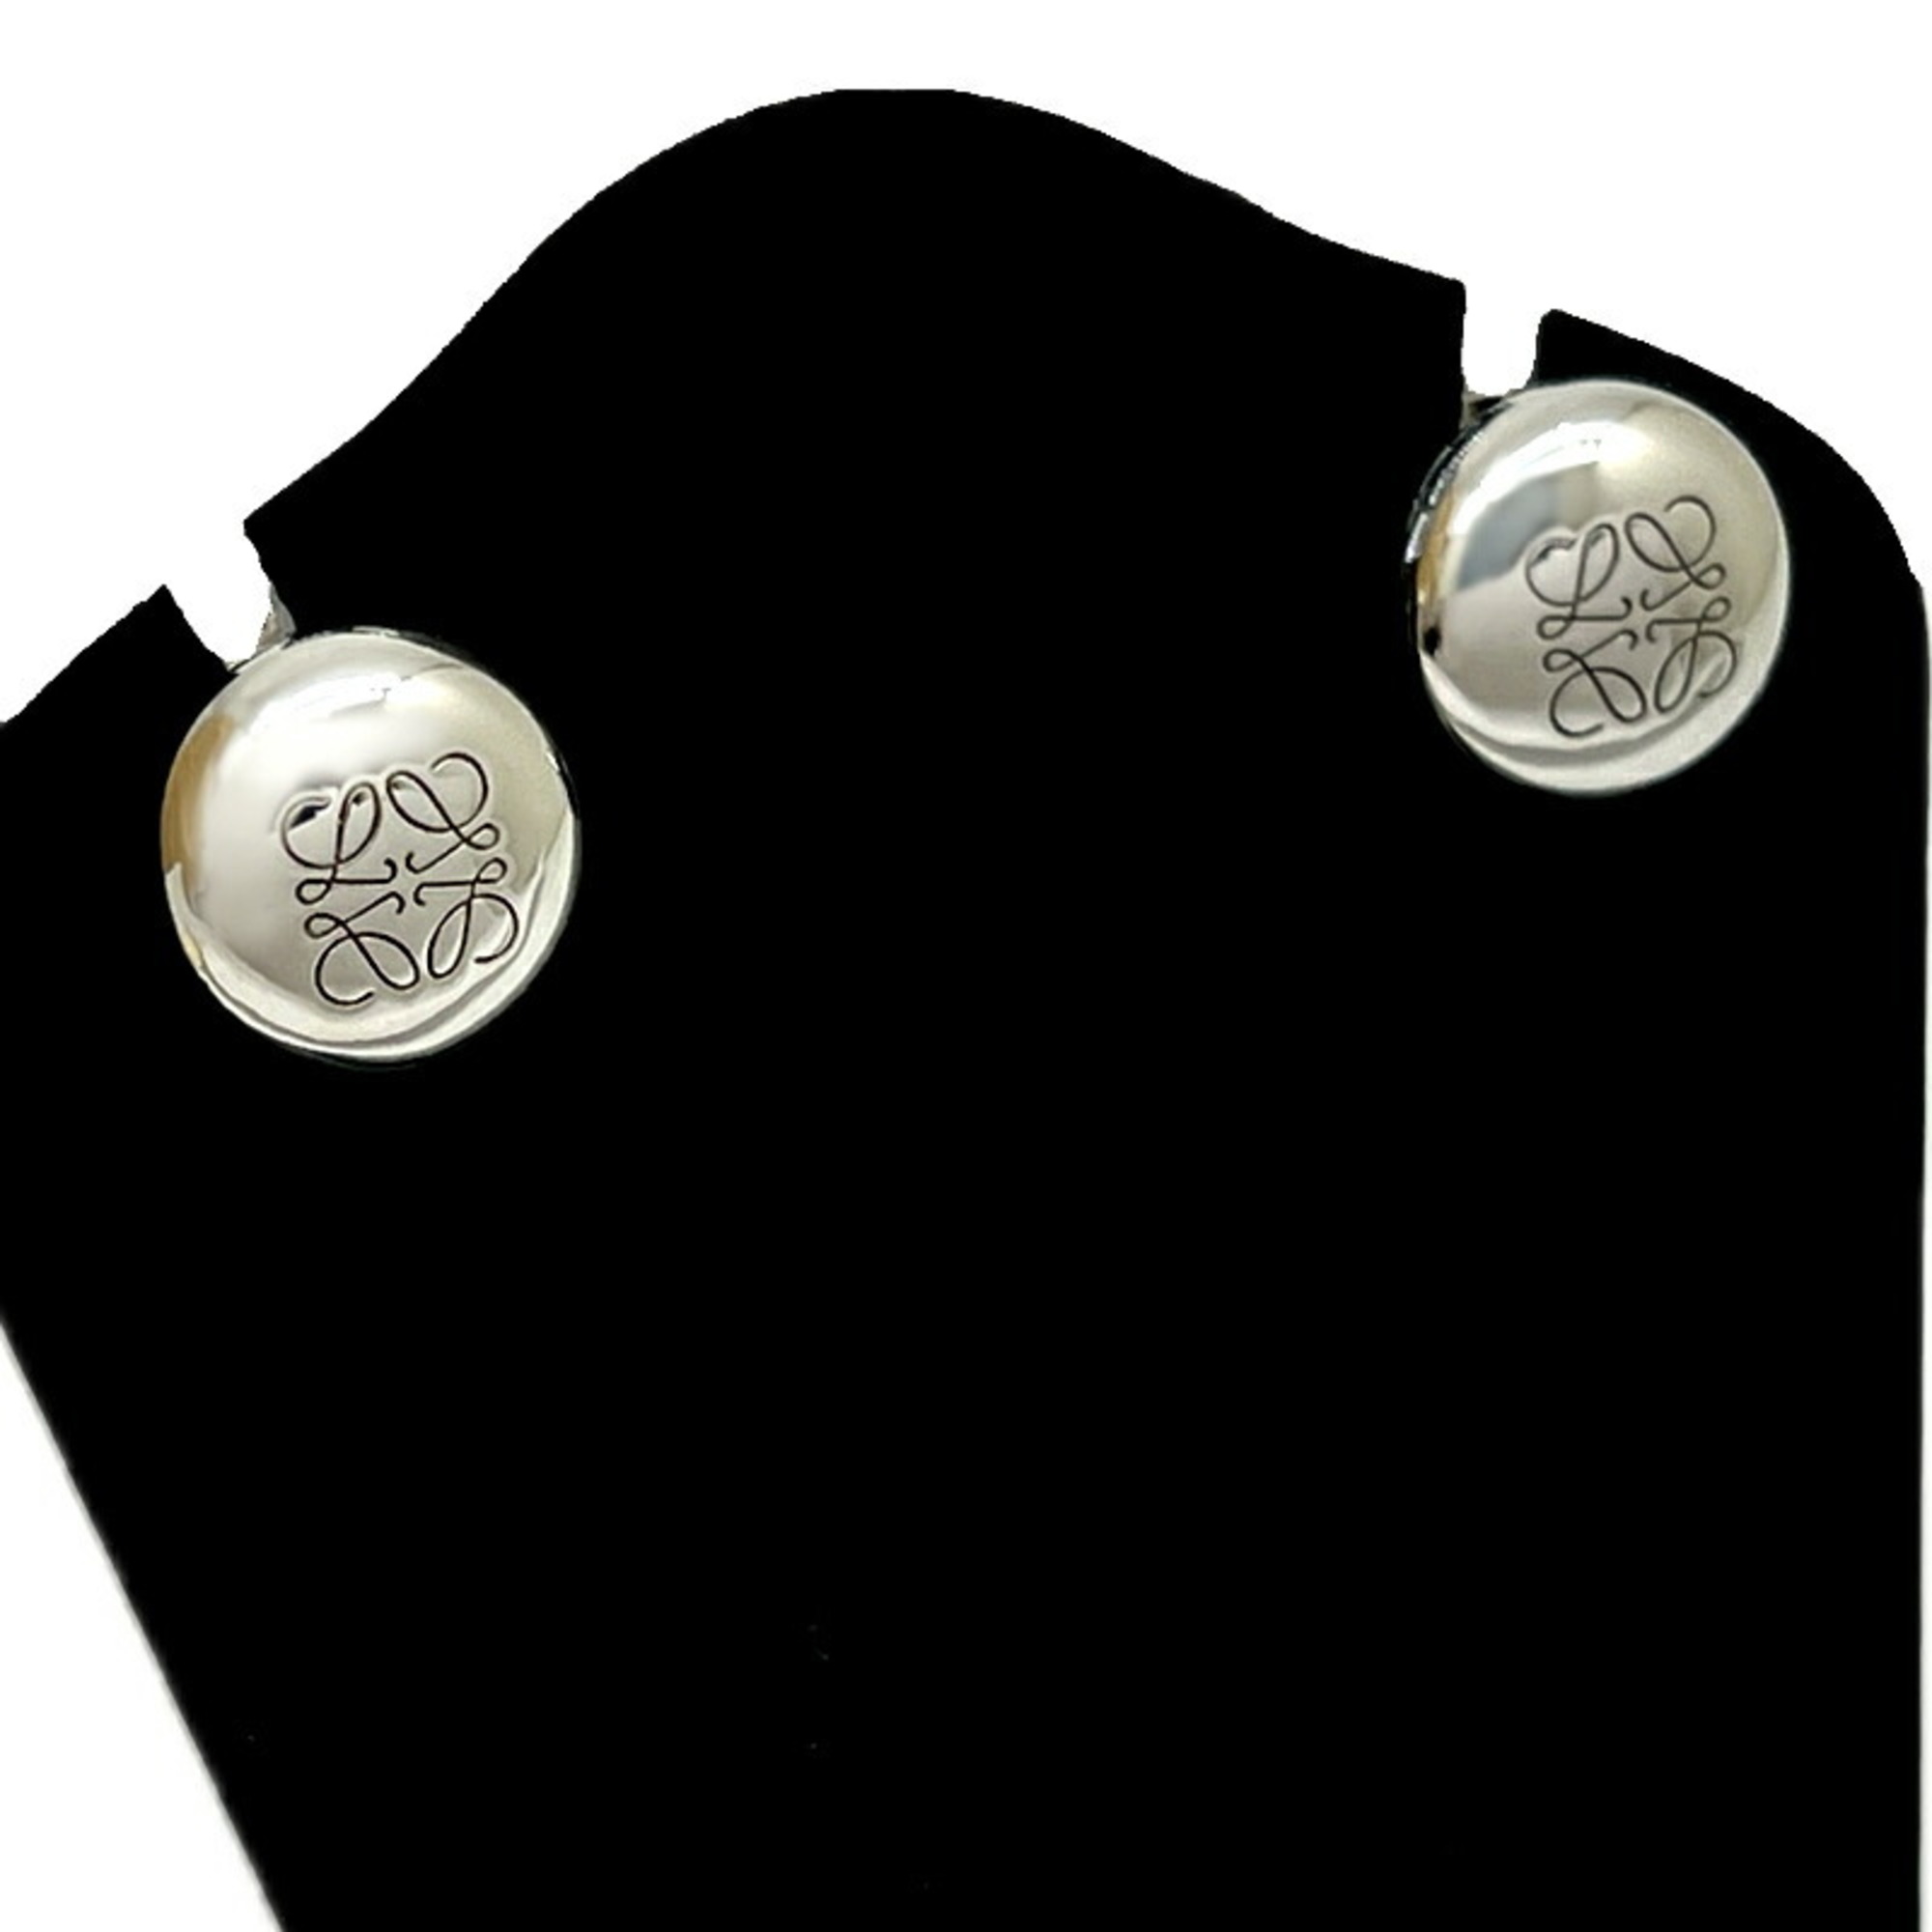 LOEWE Anagram Pebble Women's Stud Earrings SV925 Sterling Silver